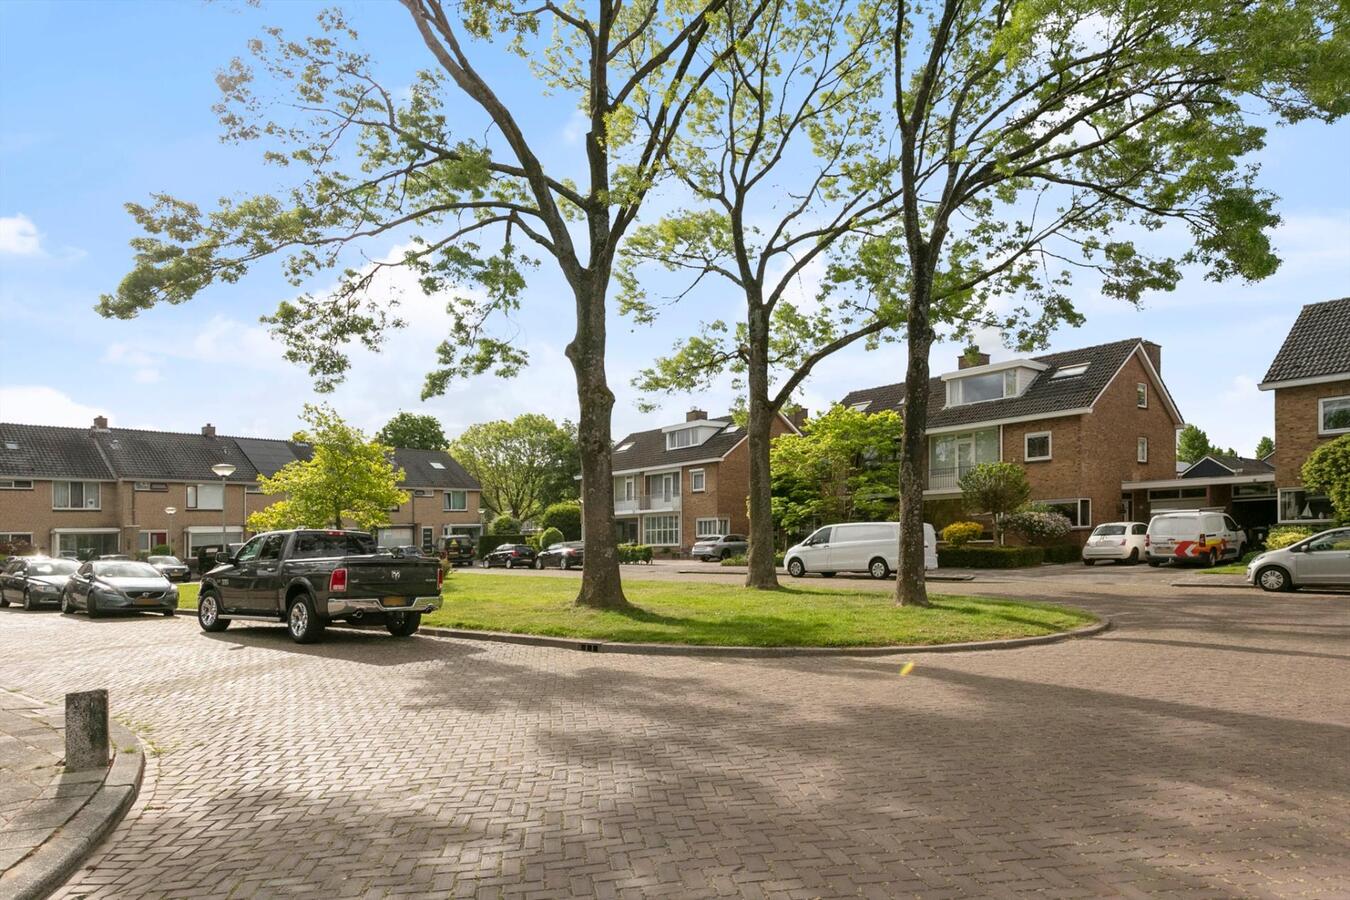 Eengezinswoning verkocht | onder voorbehoud in Dordrecht